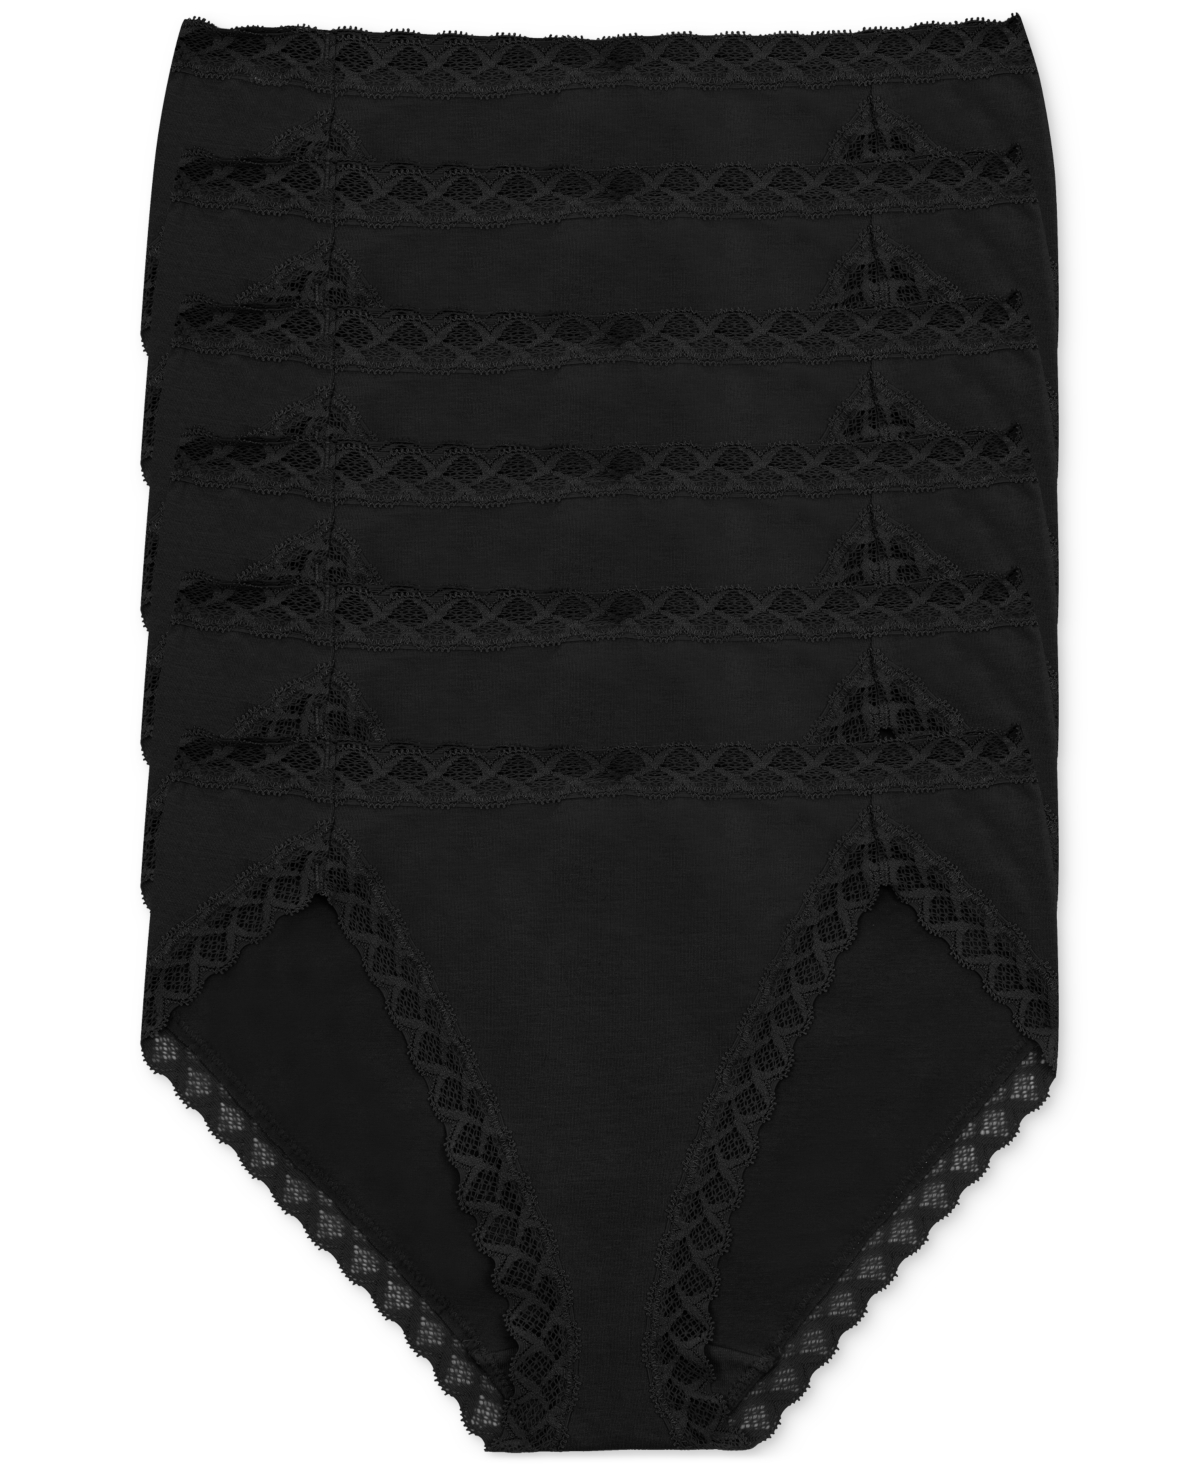 Women's 6-Pk. Bliss Girl Brief Underwear 156058P6 - Black / Black / Black / Black / Black /